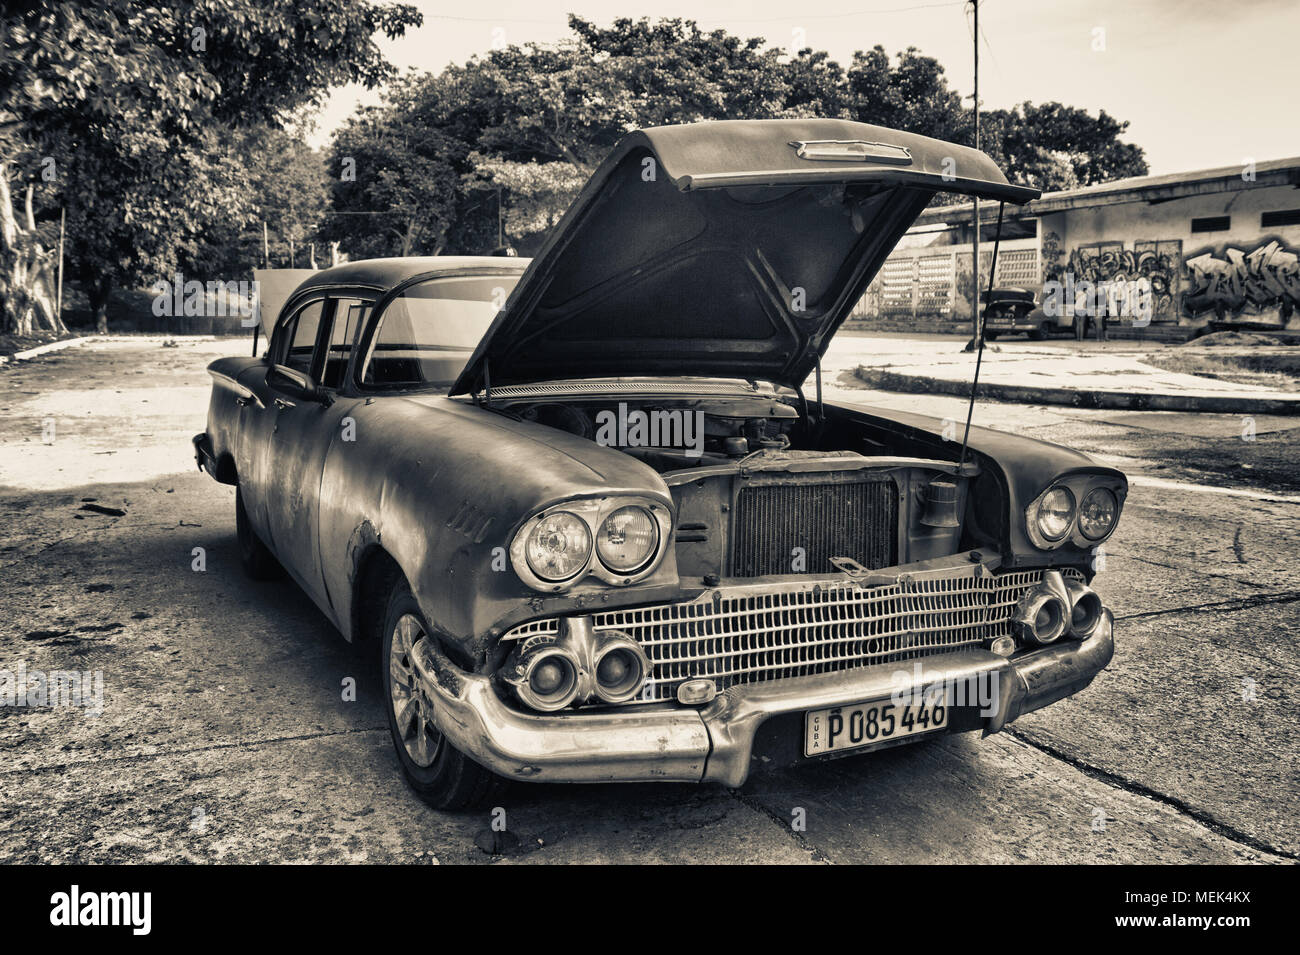 L'Avana, Cuba- DEC 12, 2016: bianco e nero tono del vecchio american automobile parcheggiata whit ploblem motore Foto Stock